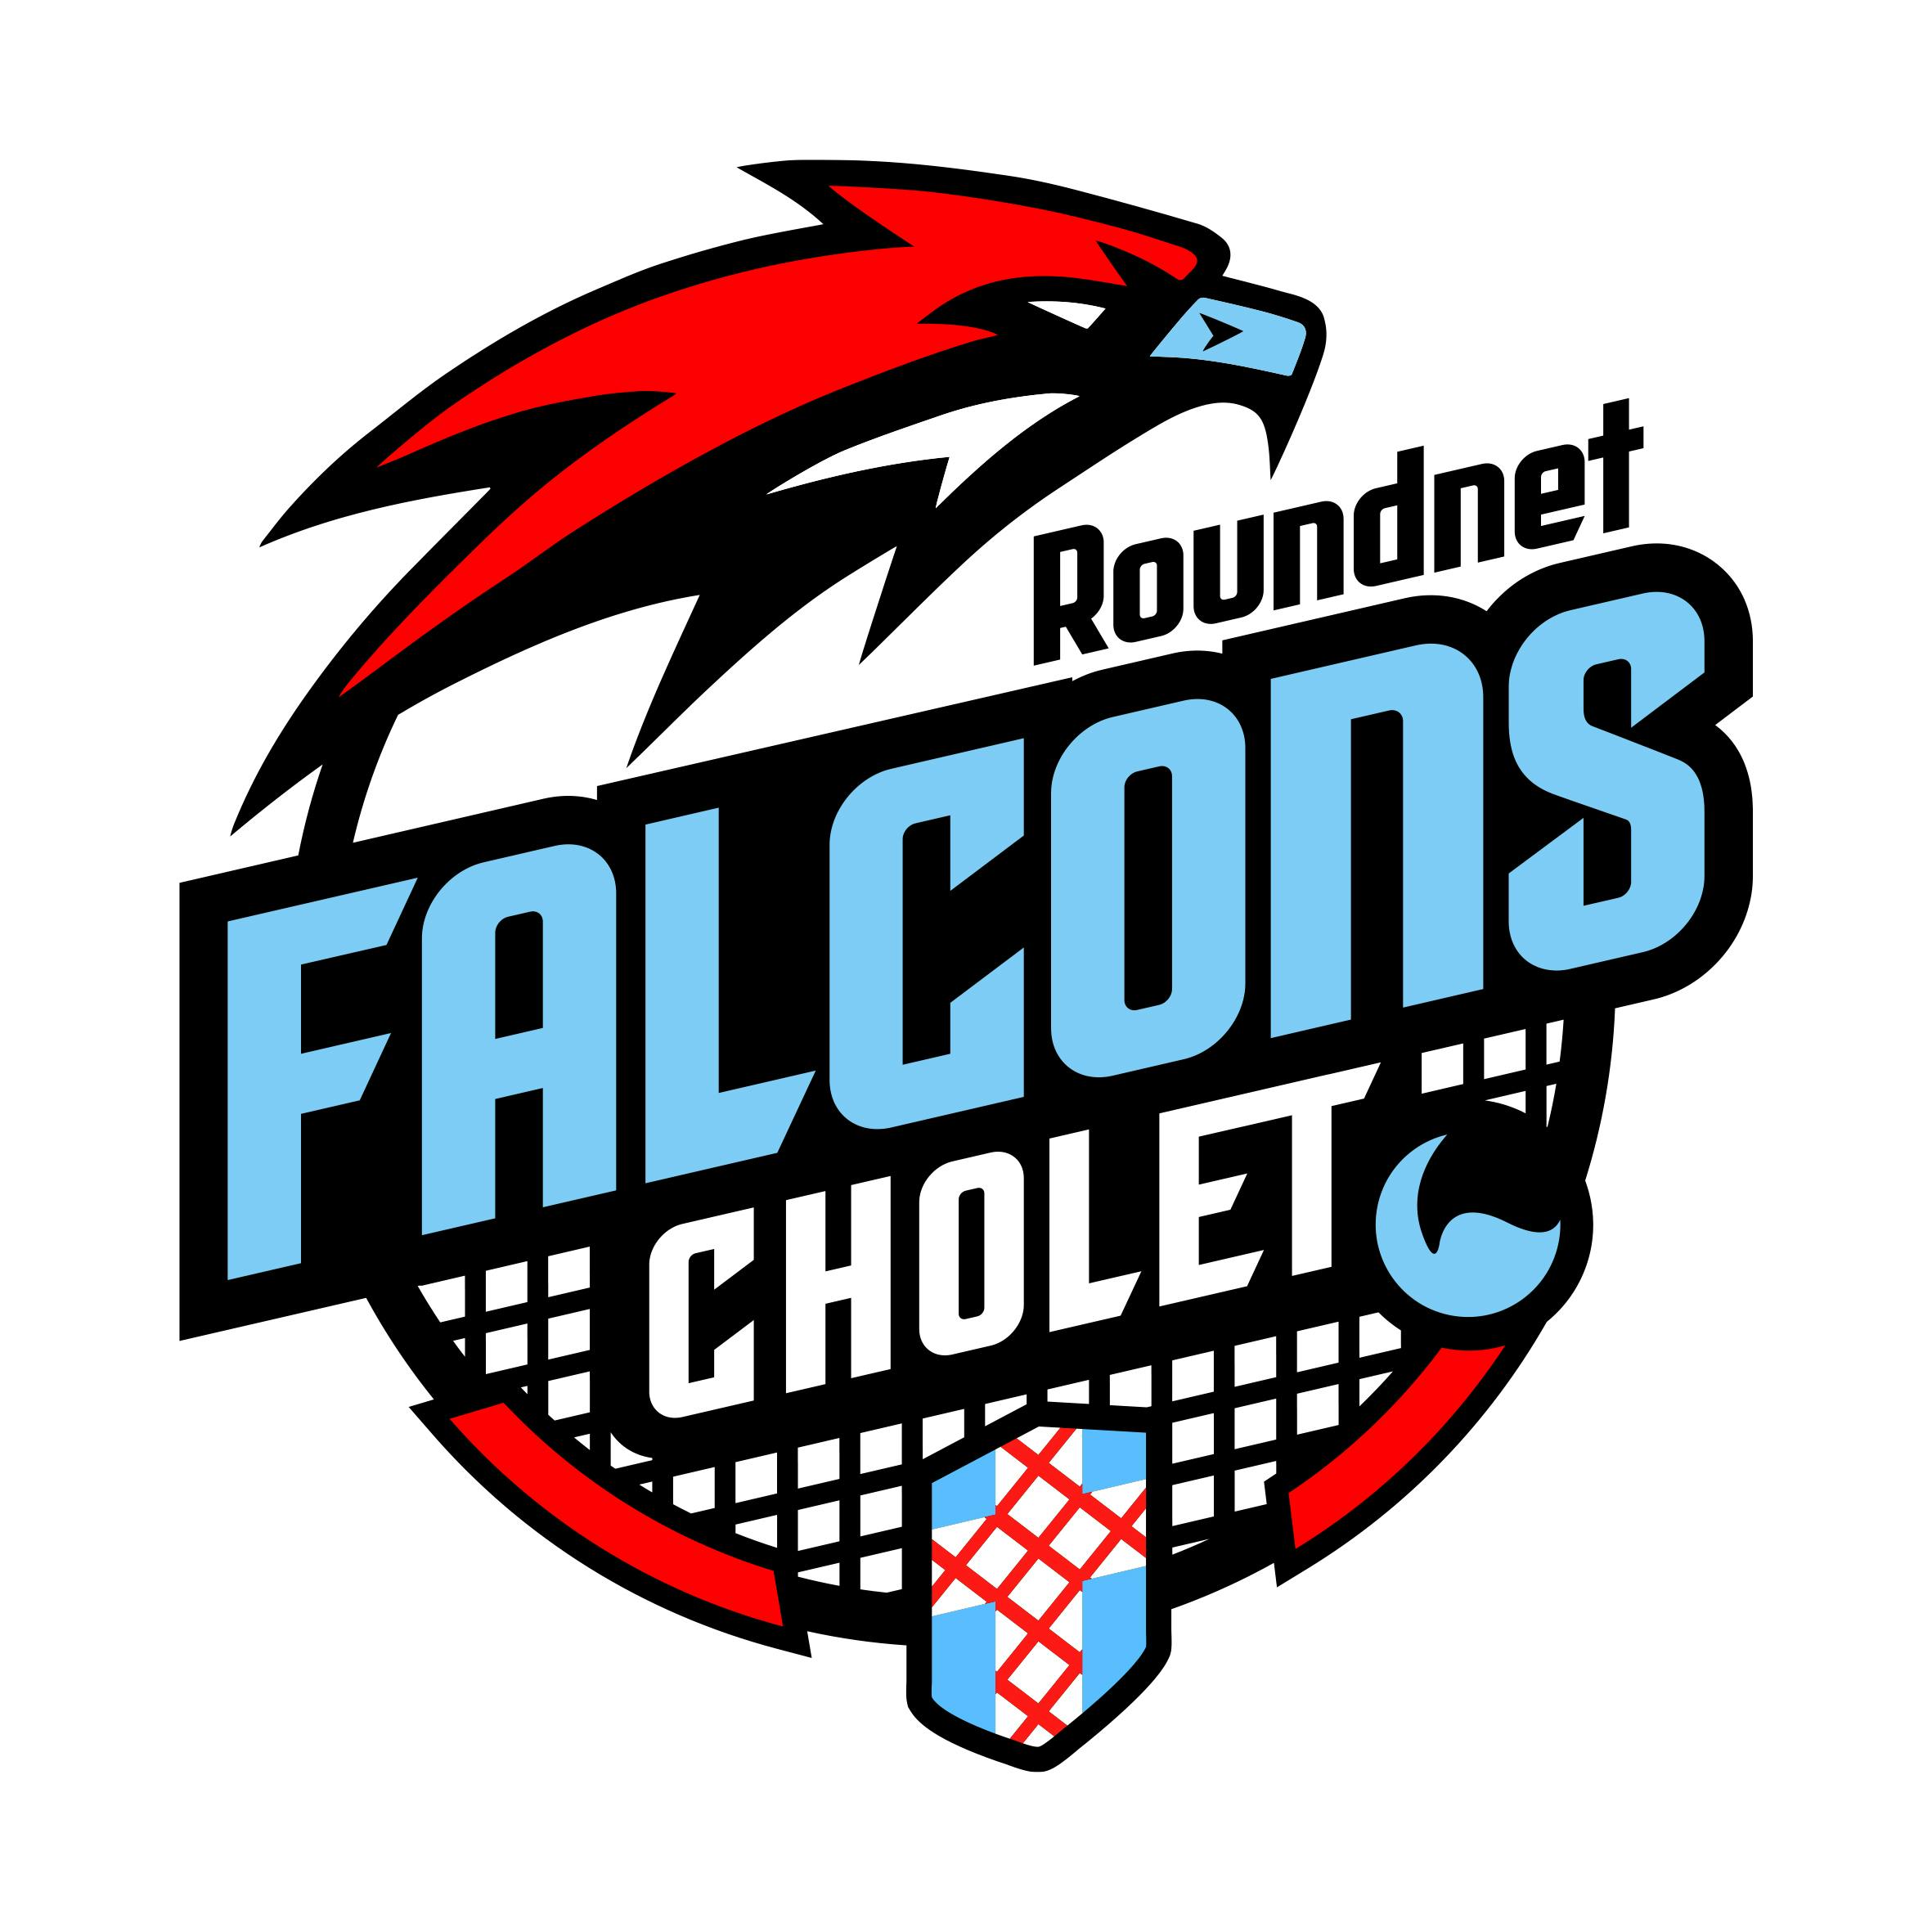 Falcons de Cholet